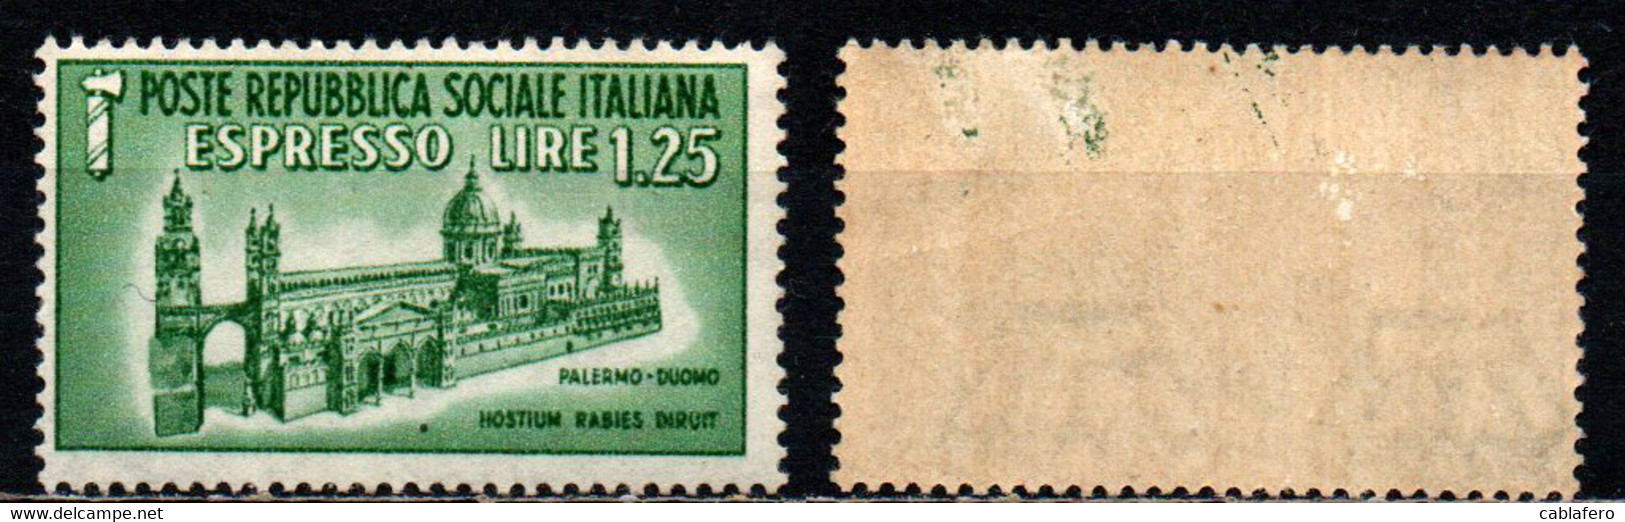 ITALIA RSI - 1944 - DUOMO DI PALERMO - MH - Exprespost